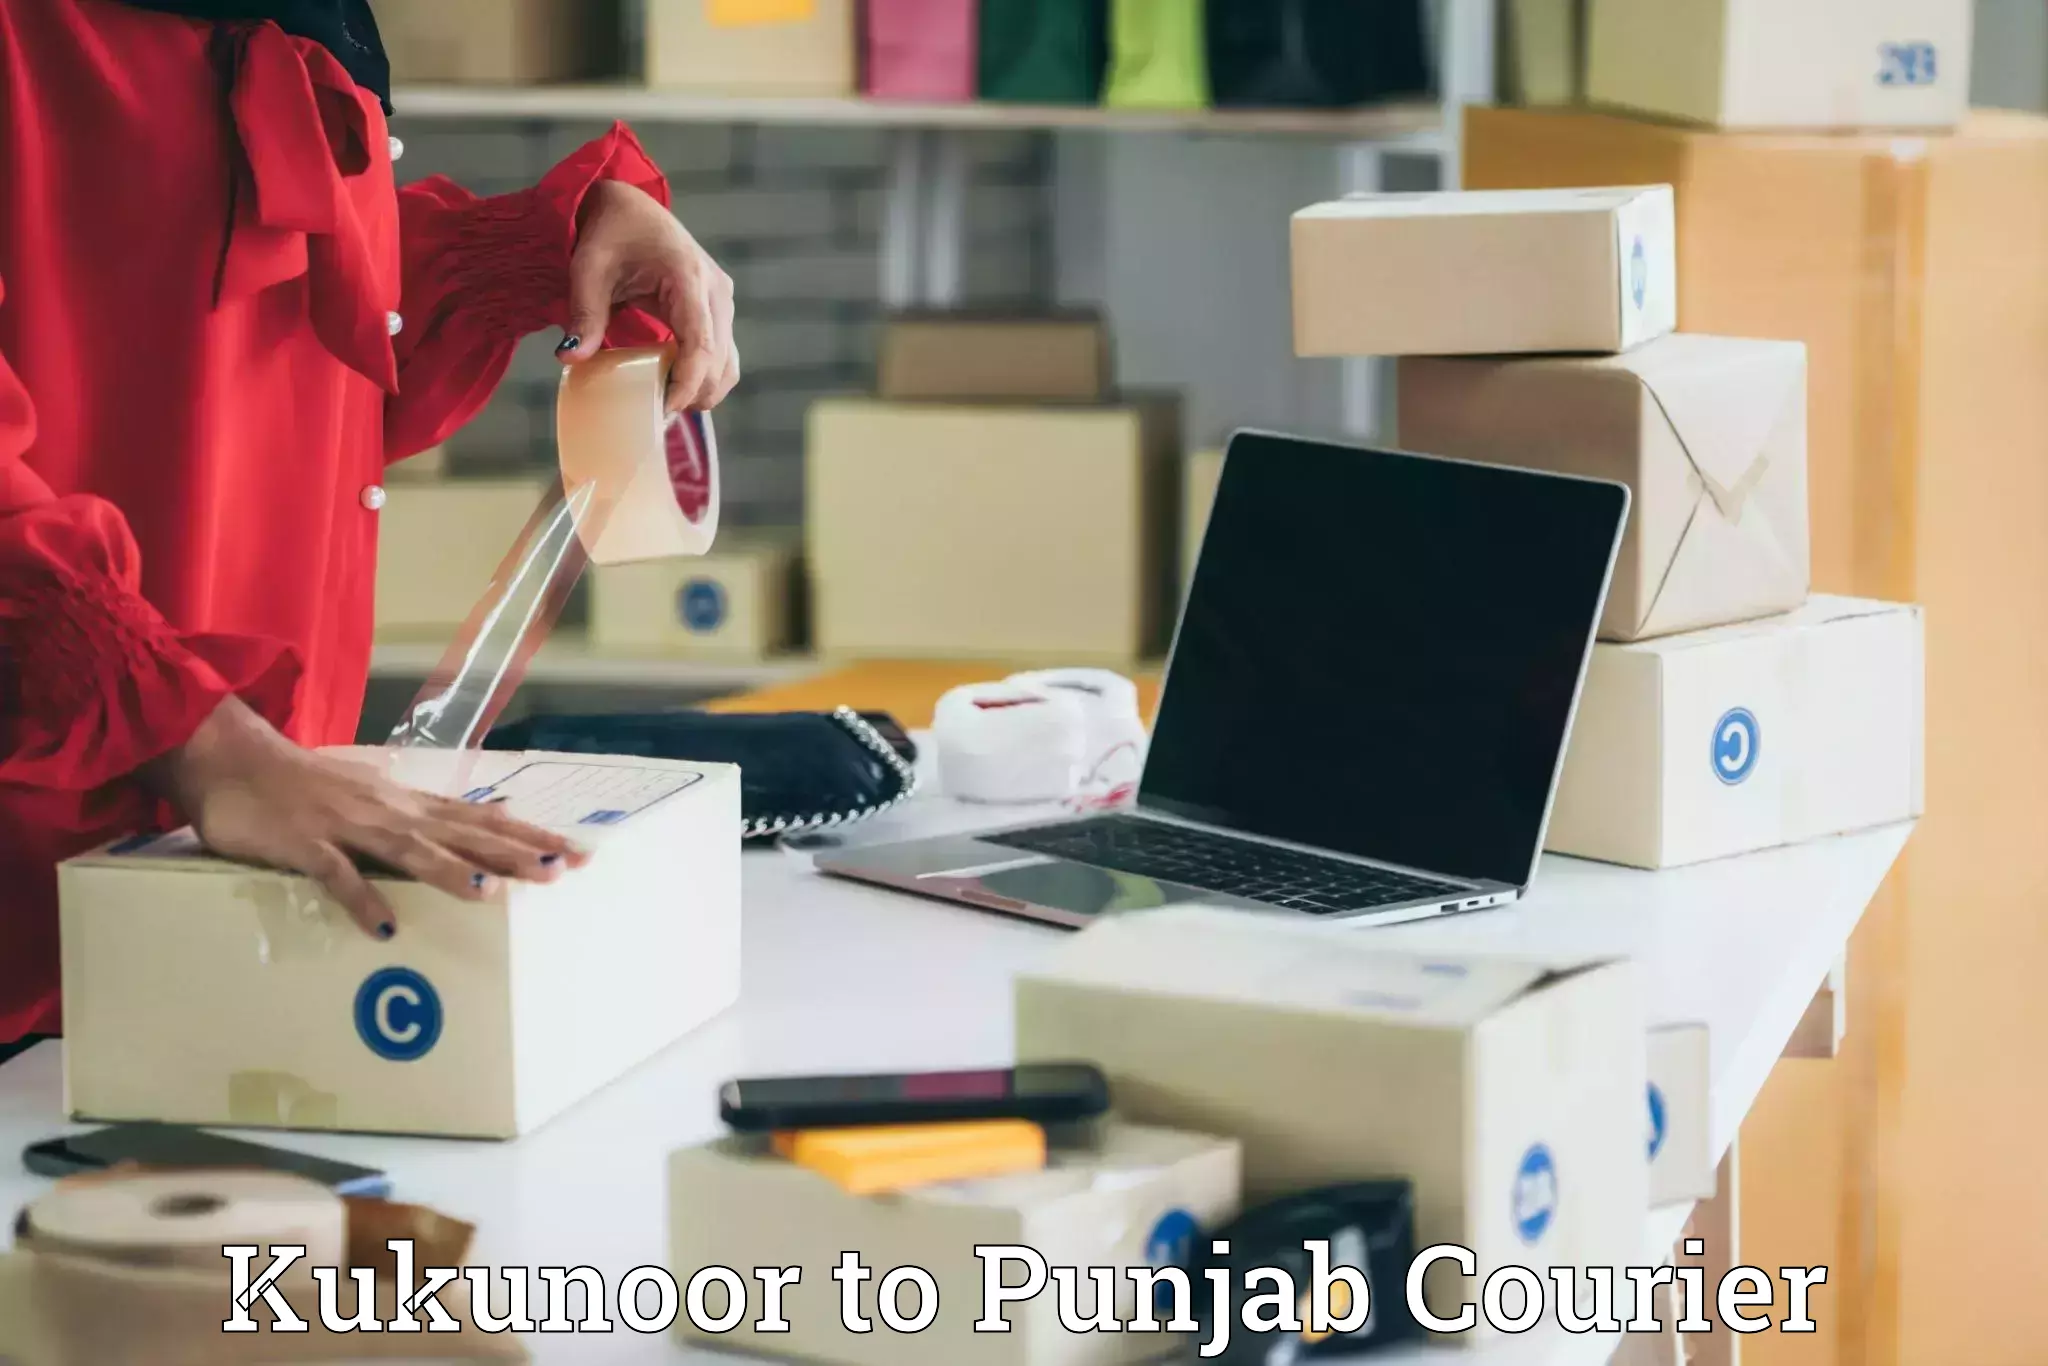 Global shipping solutions Kukunoor to Punjab